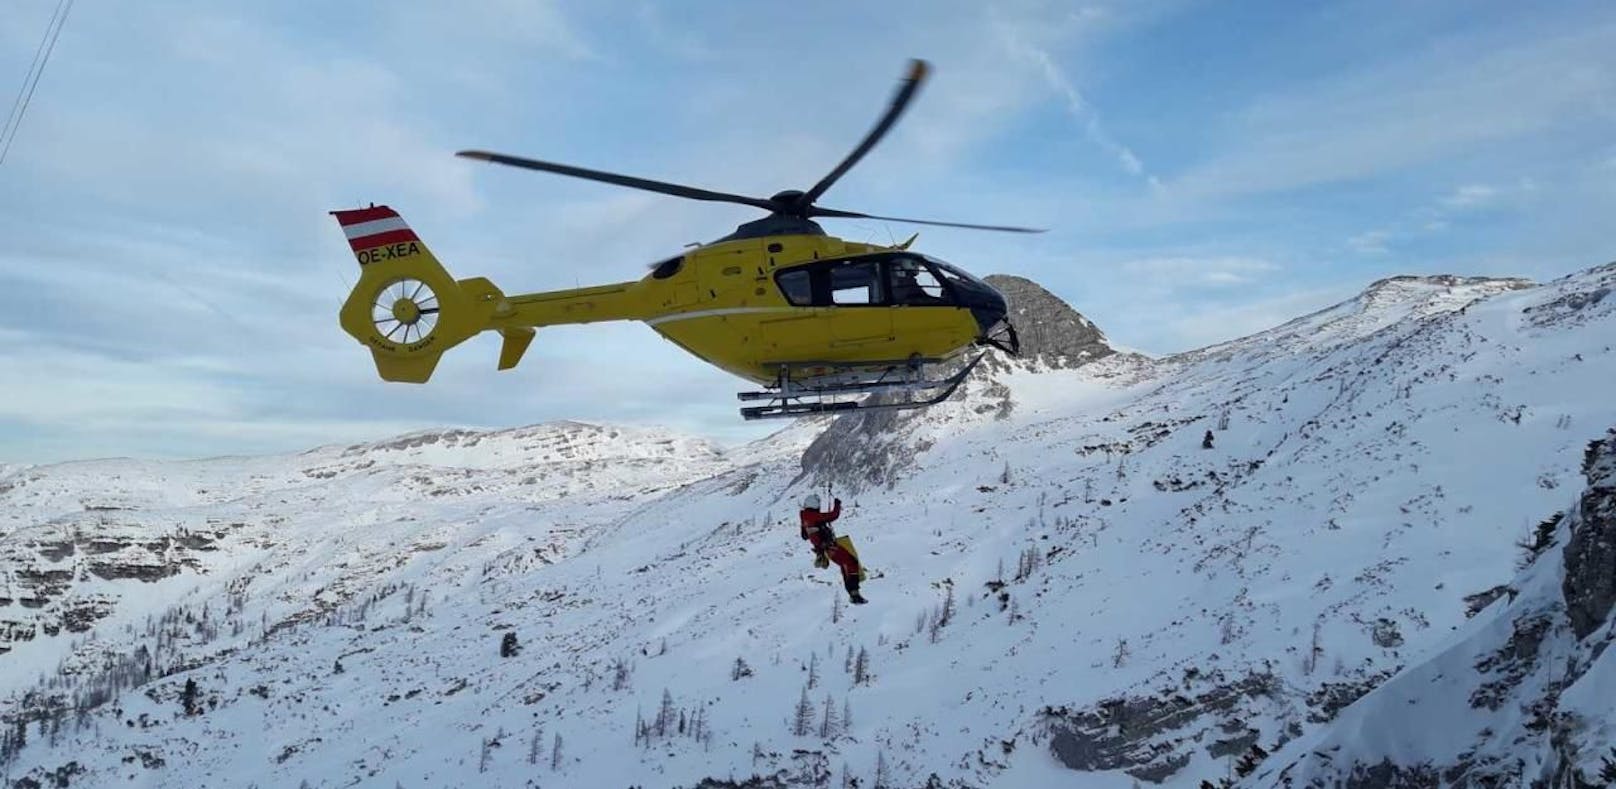 Skifahrerin überlebte 80-Meter-Sturz